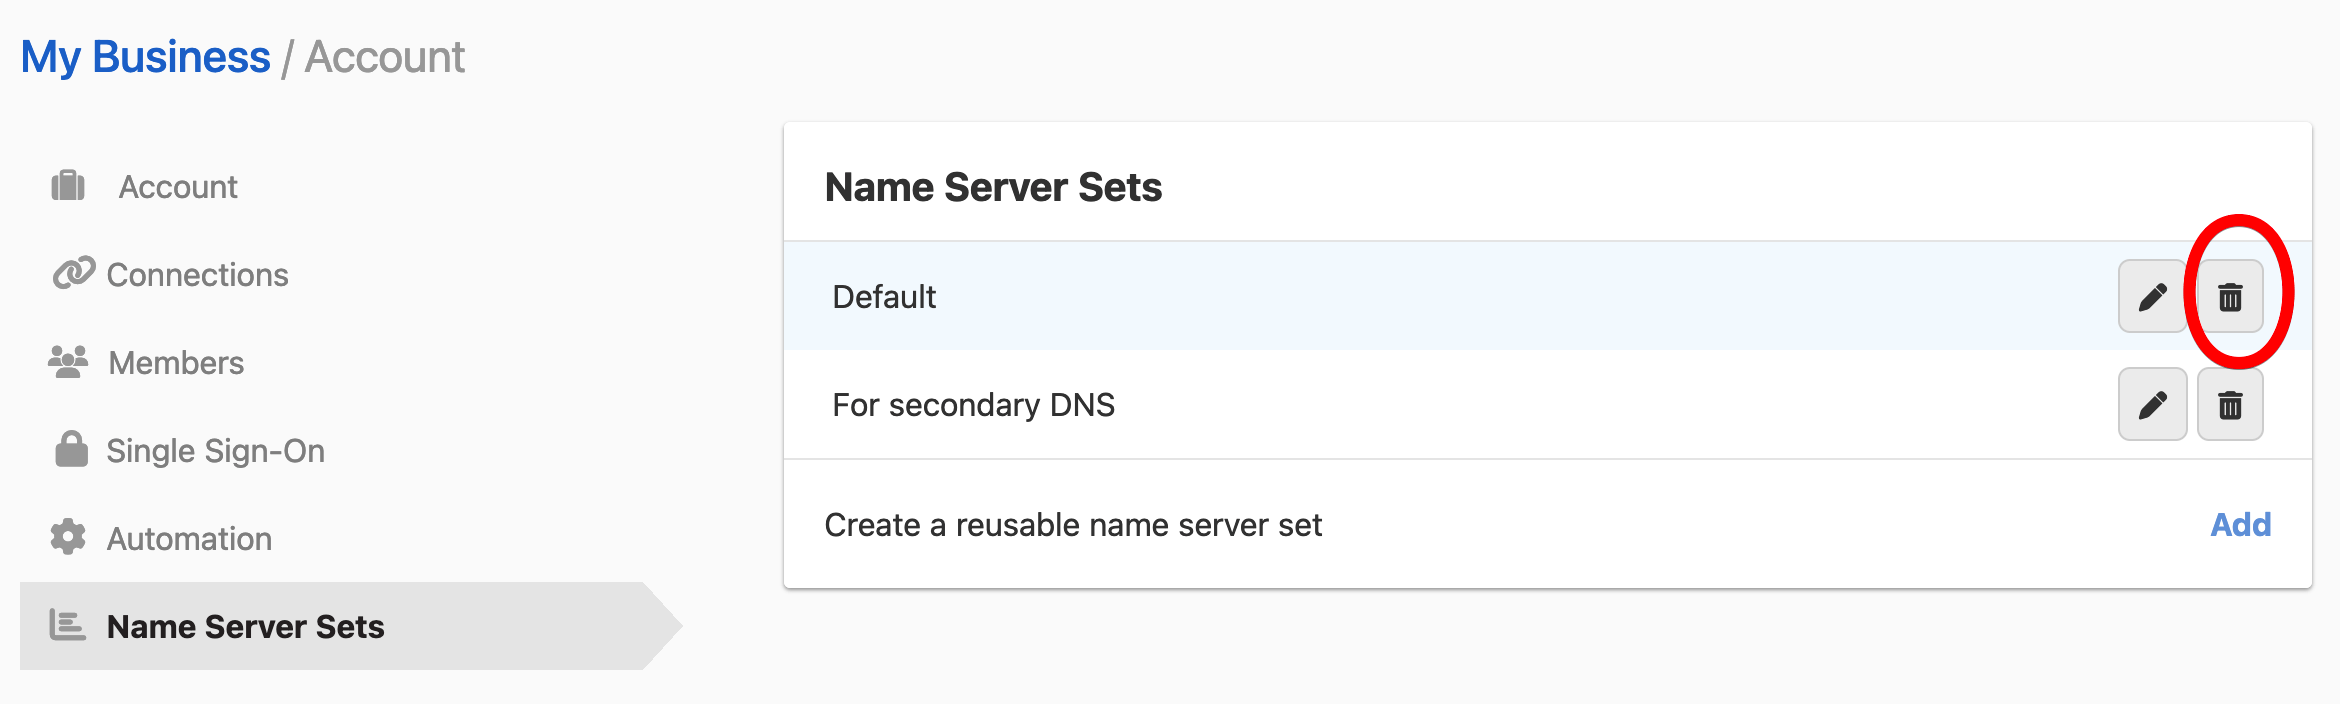 Deleting a name server set